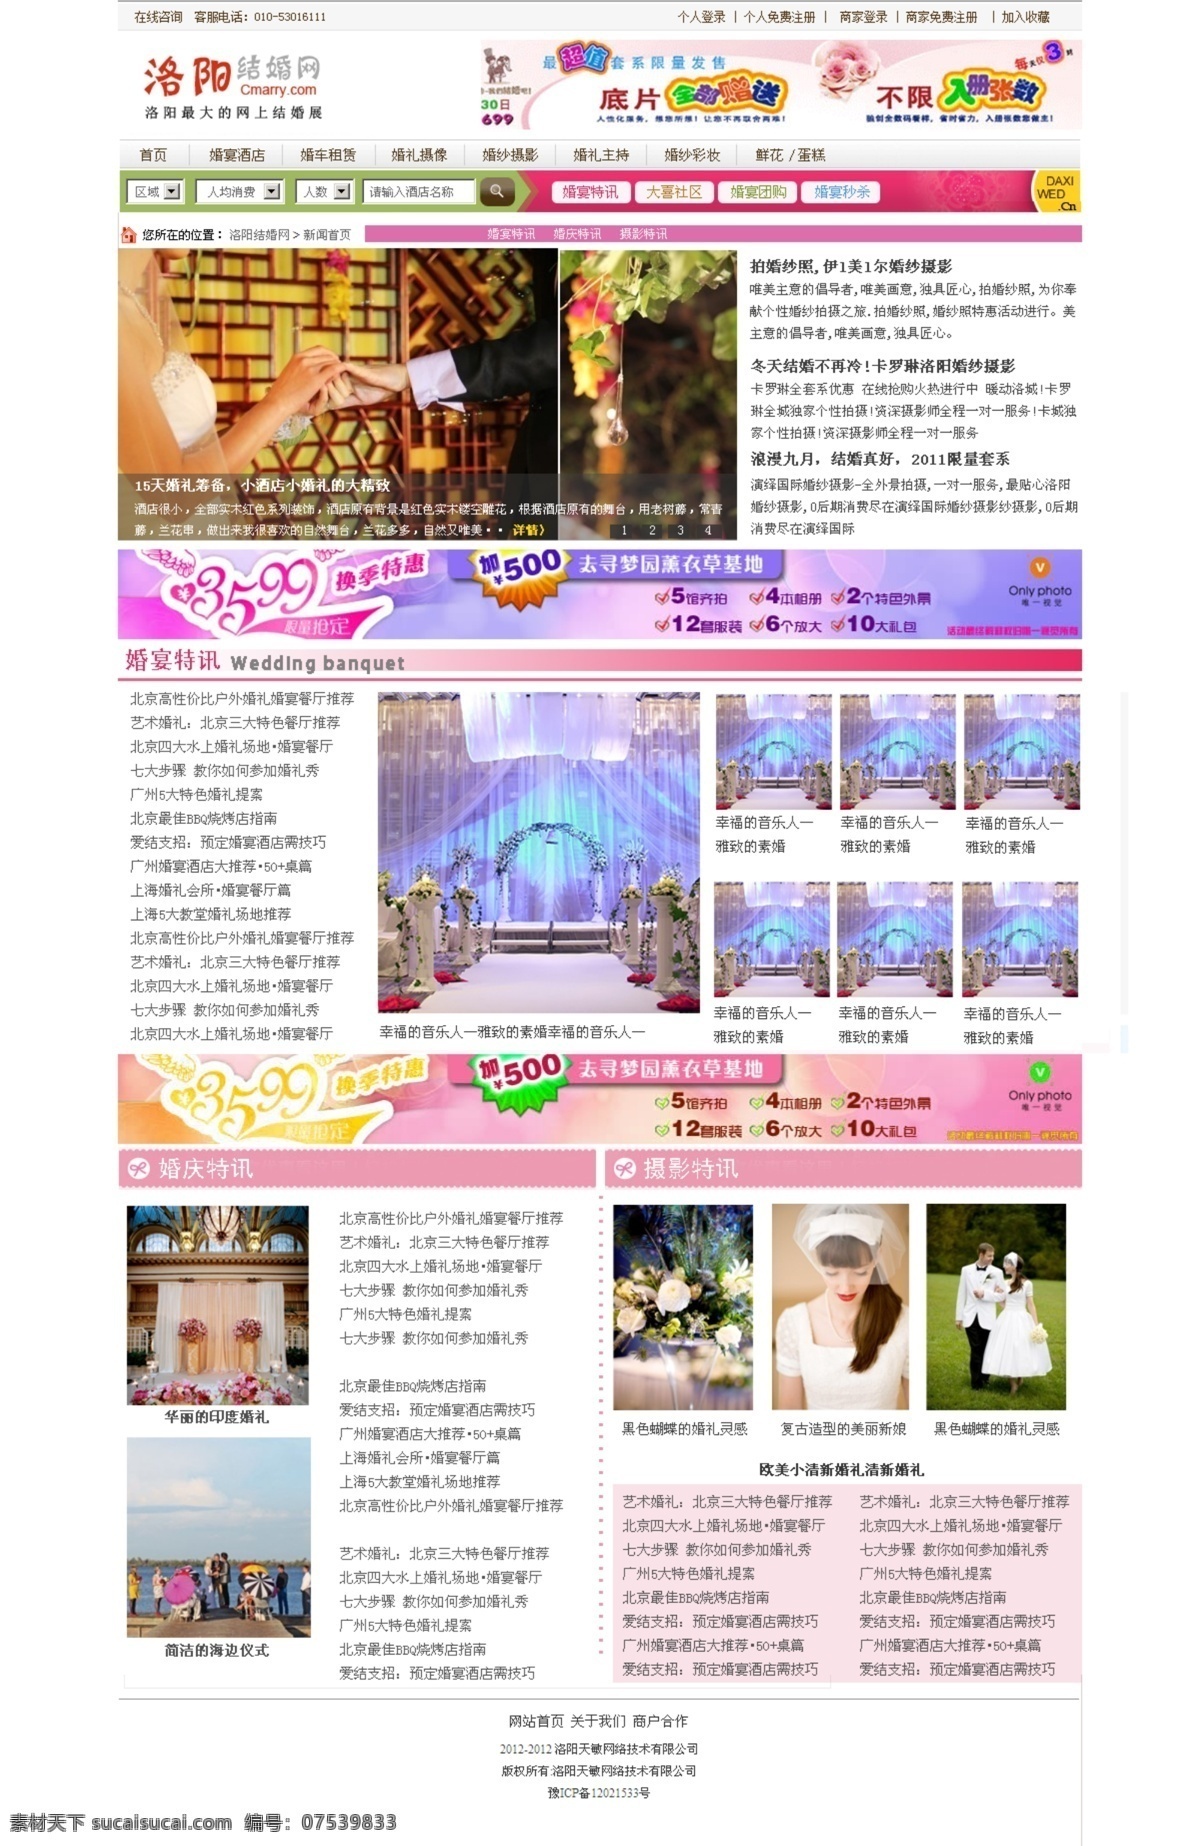 爱情 婚庆 结婚 网页 网页模板 网站 页面 网页设计 模板下载 中文模板 源文件 网页素材